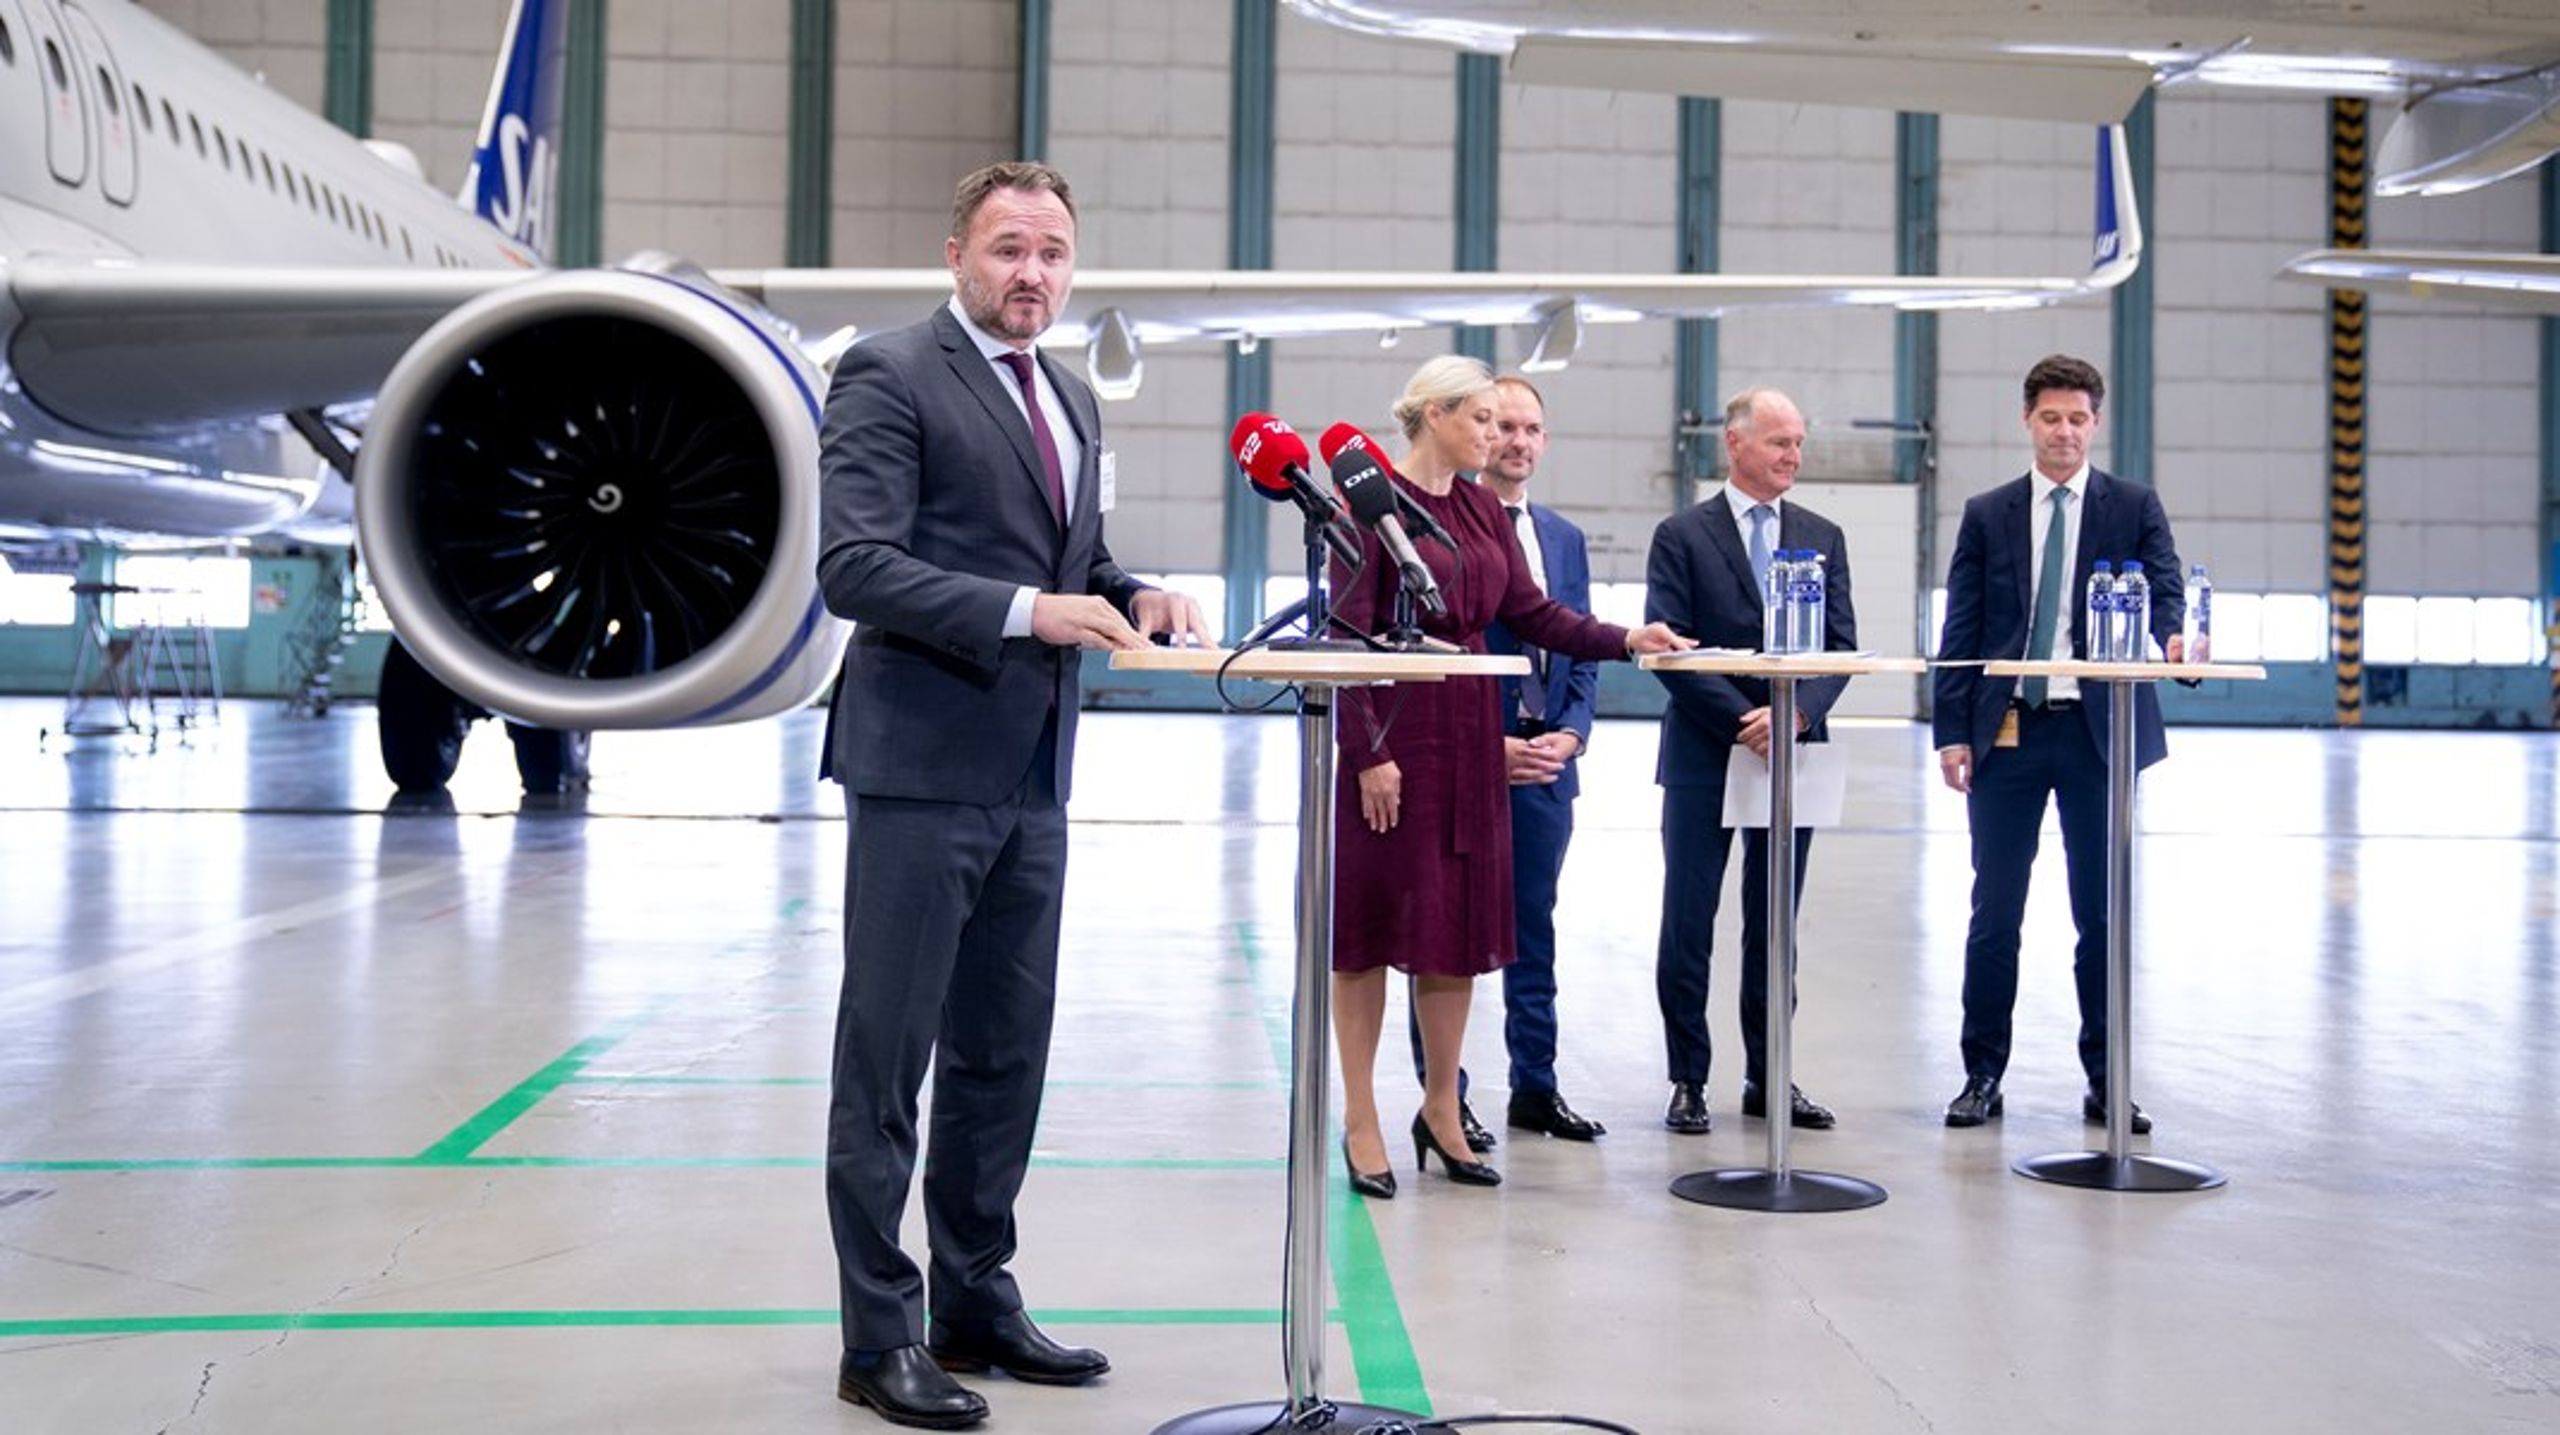 Daværende klima-, energi,- og forsyningsminister Dan Jørgensen præsenterede regeringens udspil "Grøn luftfart for alle" i Københavns Lufthavn tirsdag den 20. september 2022.&nbsp;<br>